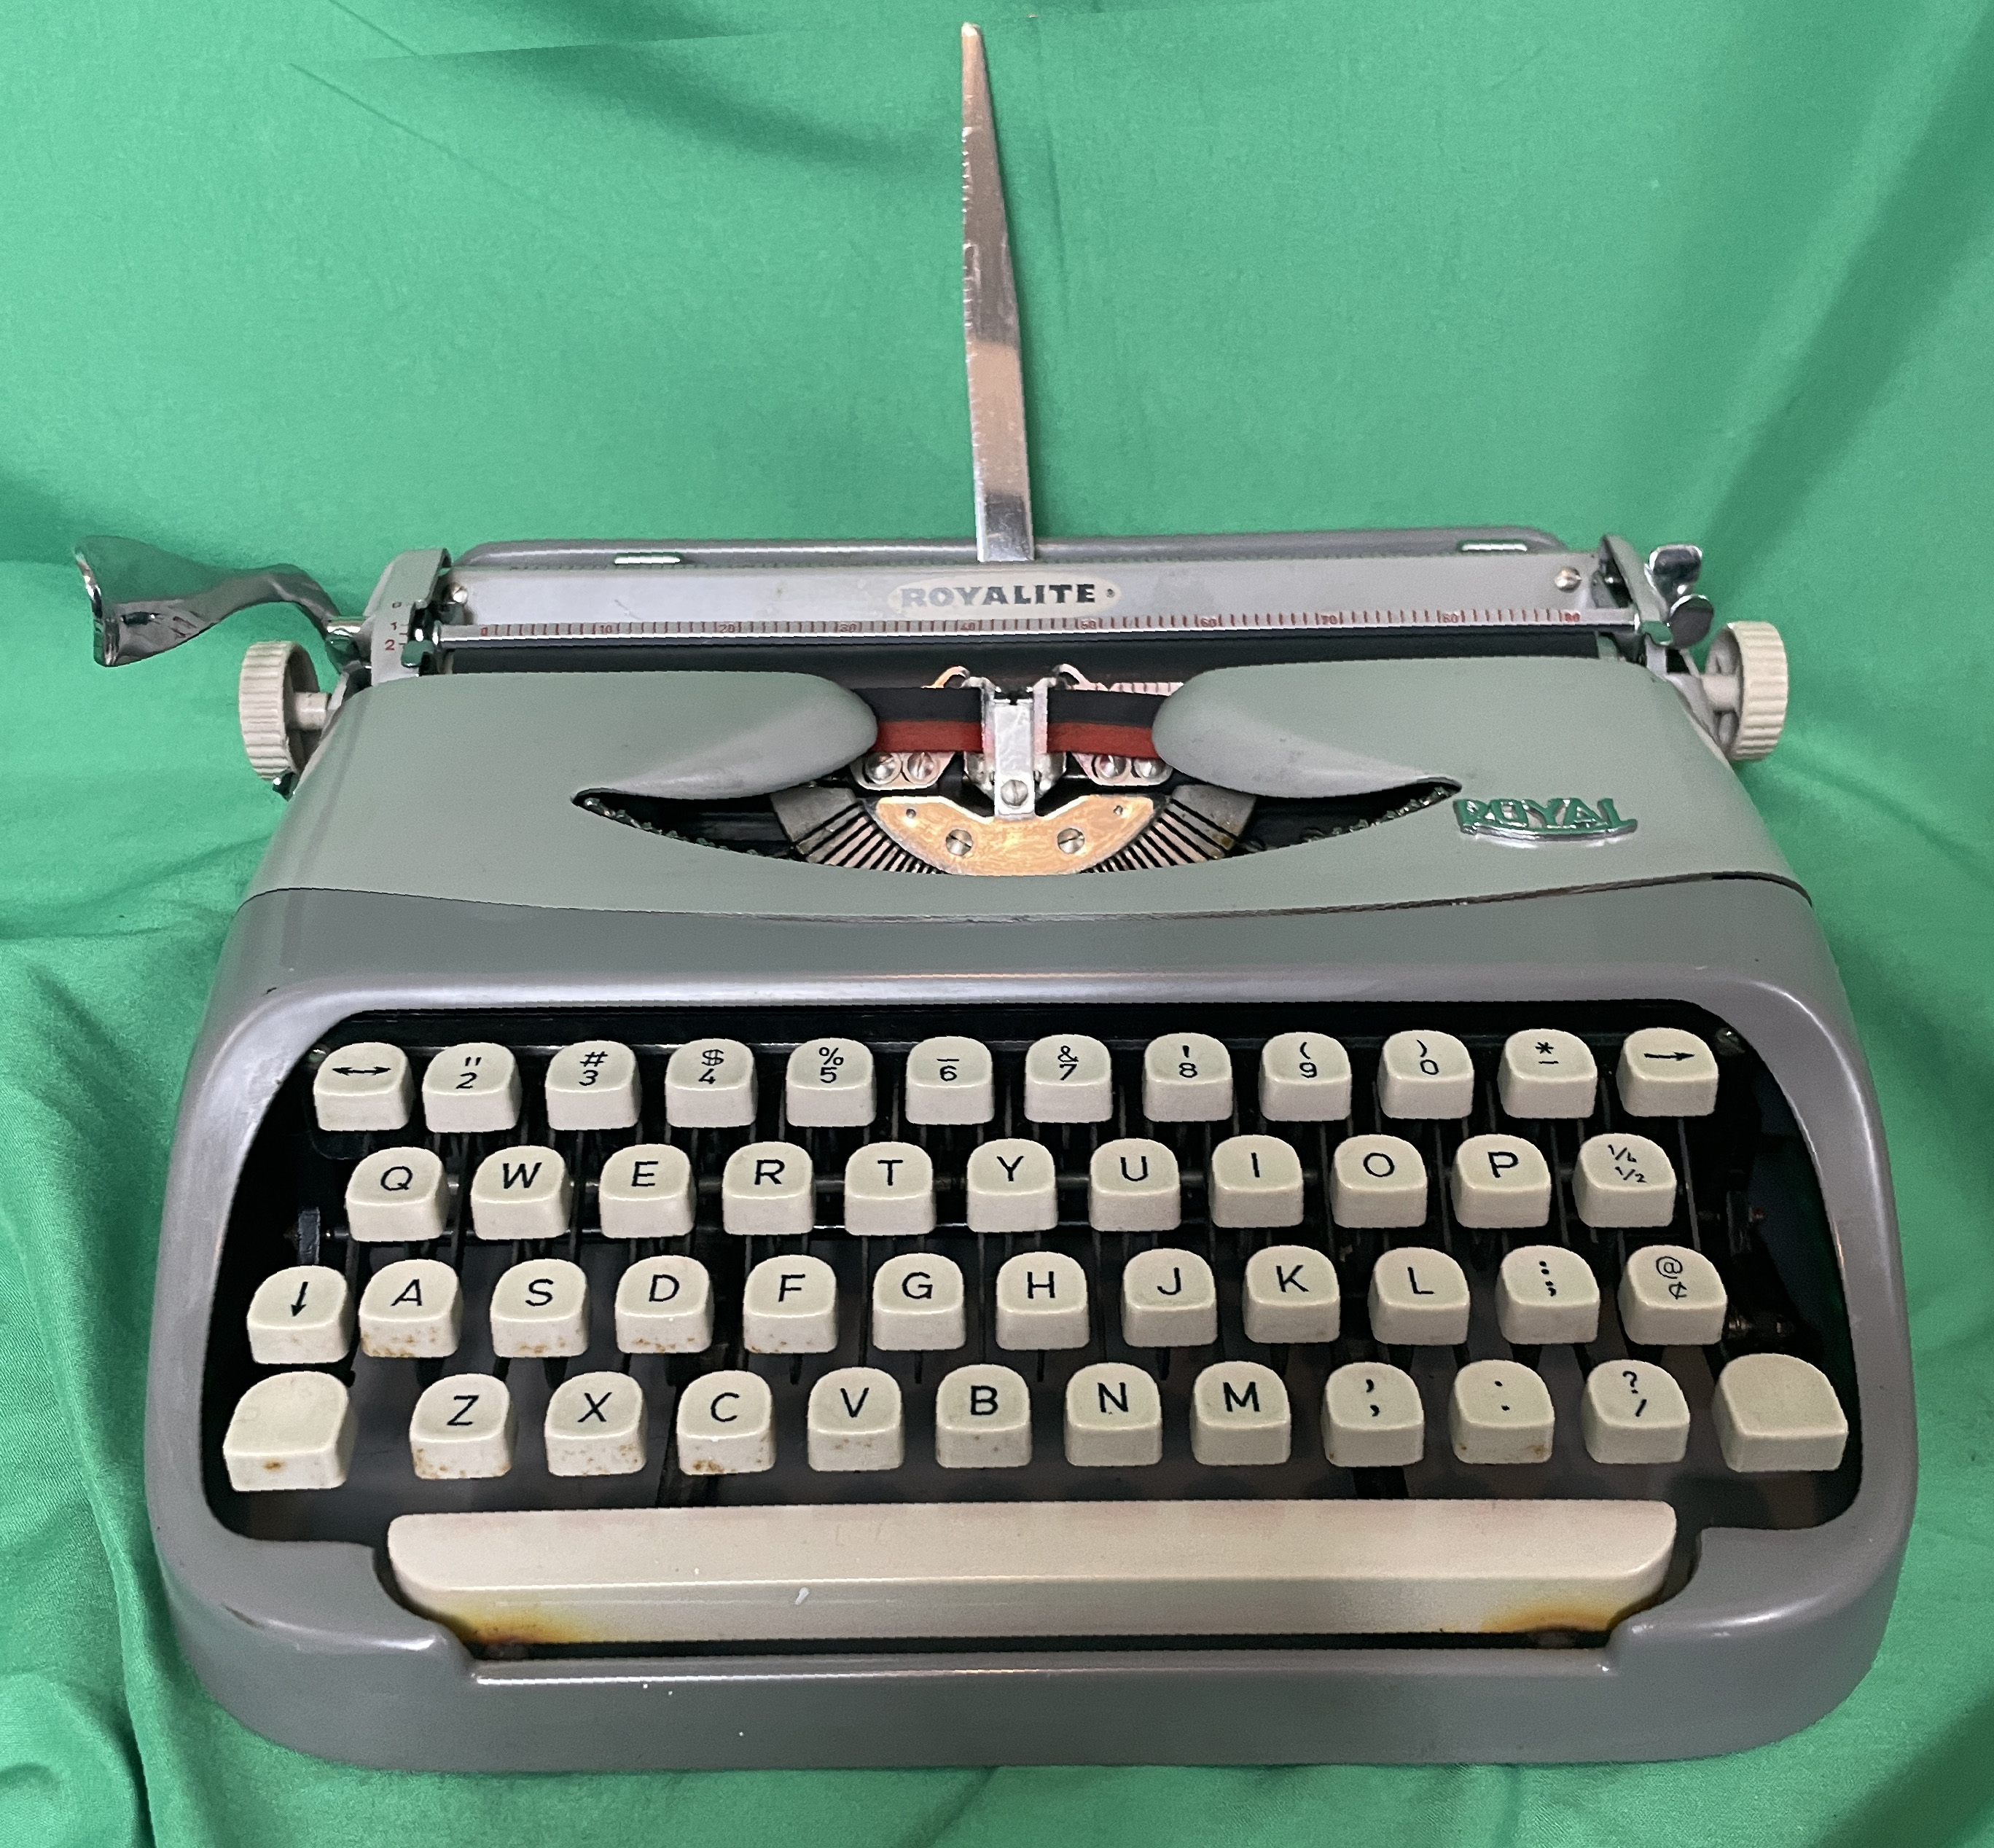 1960 Royal Royalite Portable Typewriter (made in Holland)